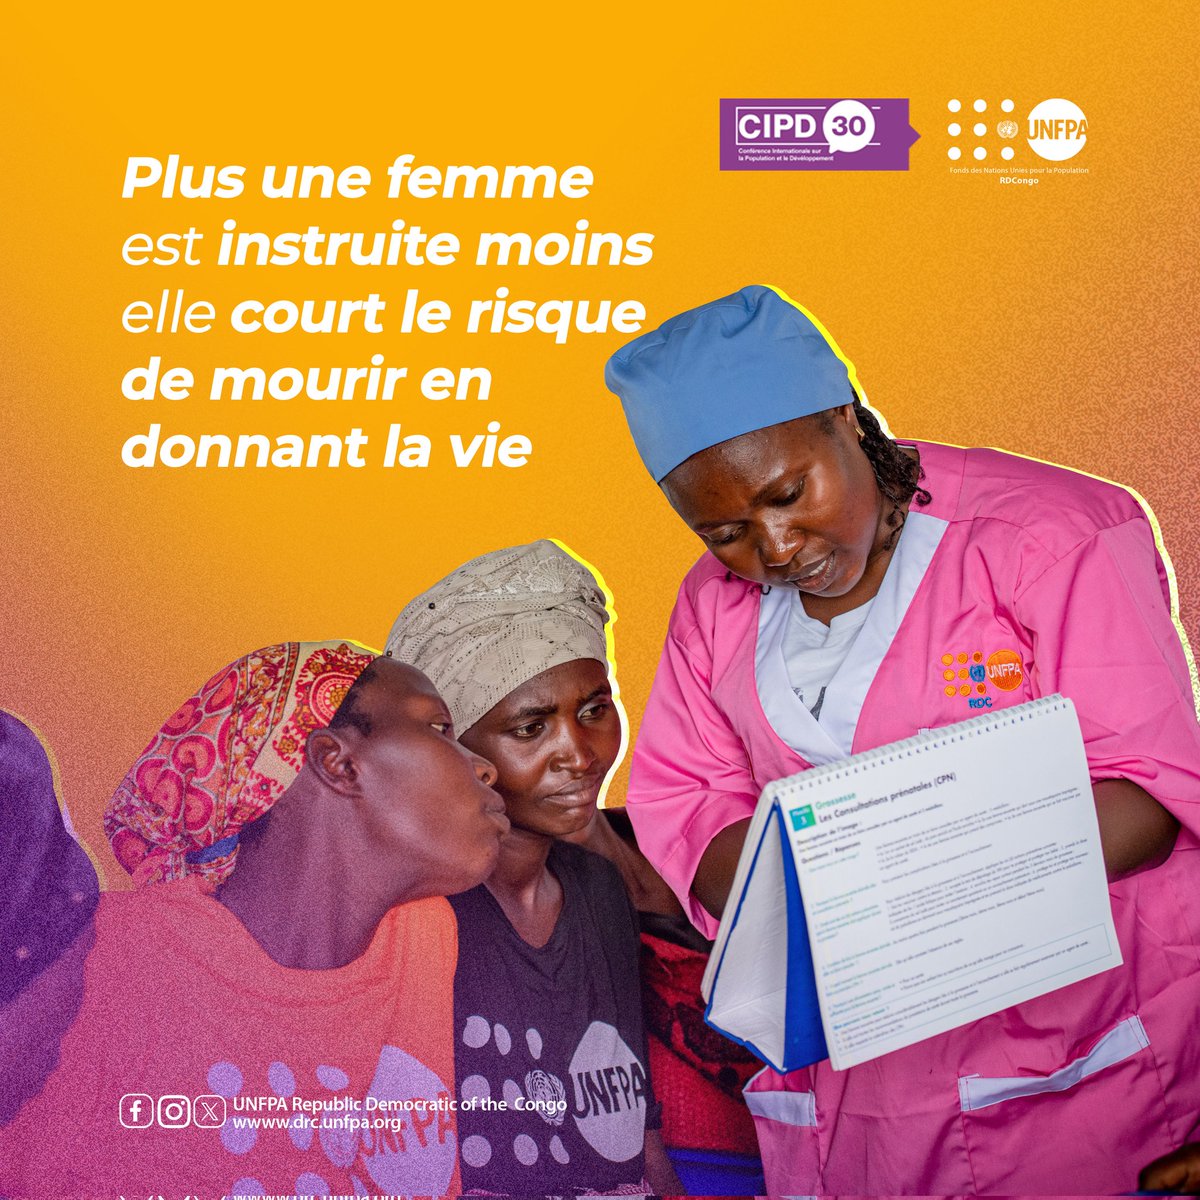 Des sages-femmes bien formés peuvent fournir 90% des soins essentiels de santé sexuelle et reproductive, protégeant ainsi la santé et la dignité humaine des femmes et de leurs familles. @UNFPA #MaternalHealth #SafeBirth @UNFPA_ESARO